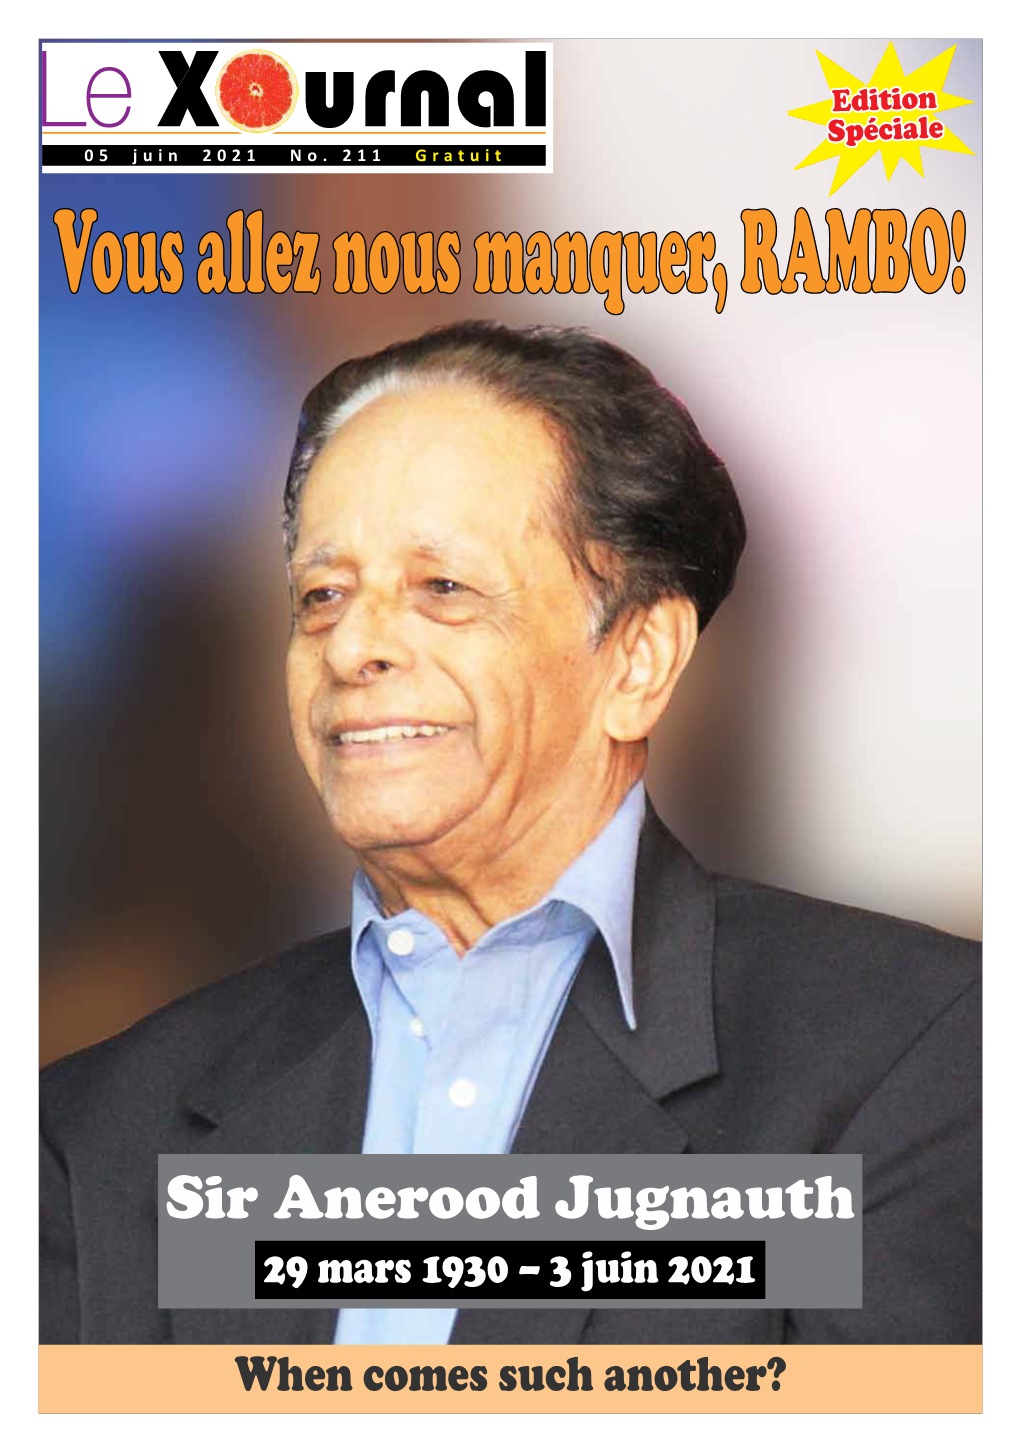 Sir Anerood Jugnauth 1930-2021 Spéciale 05 Juin 2021 No